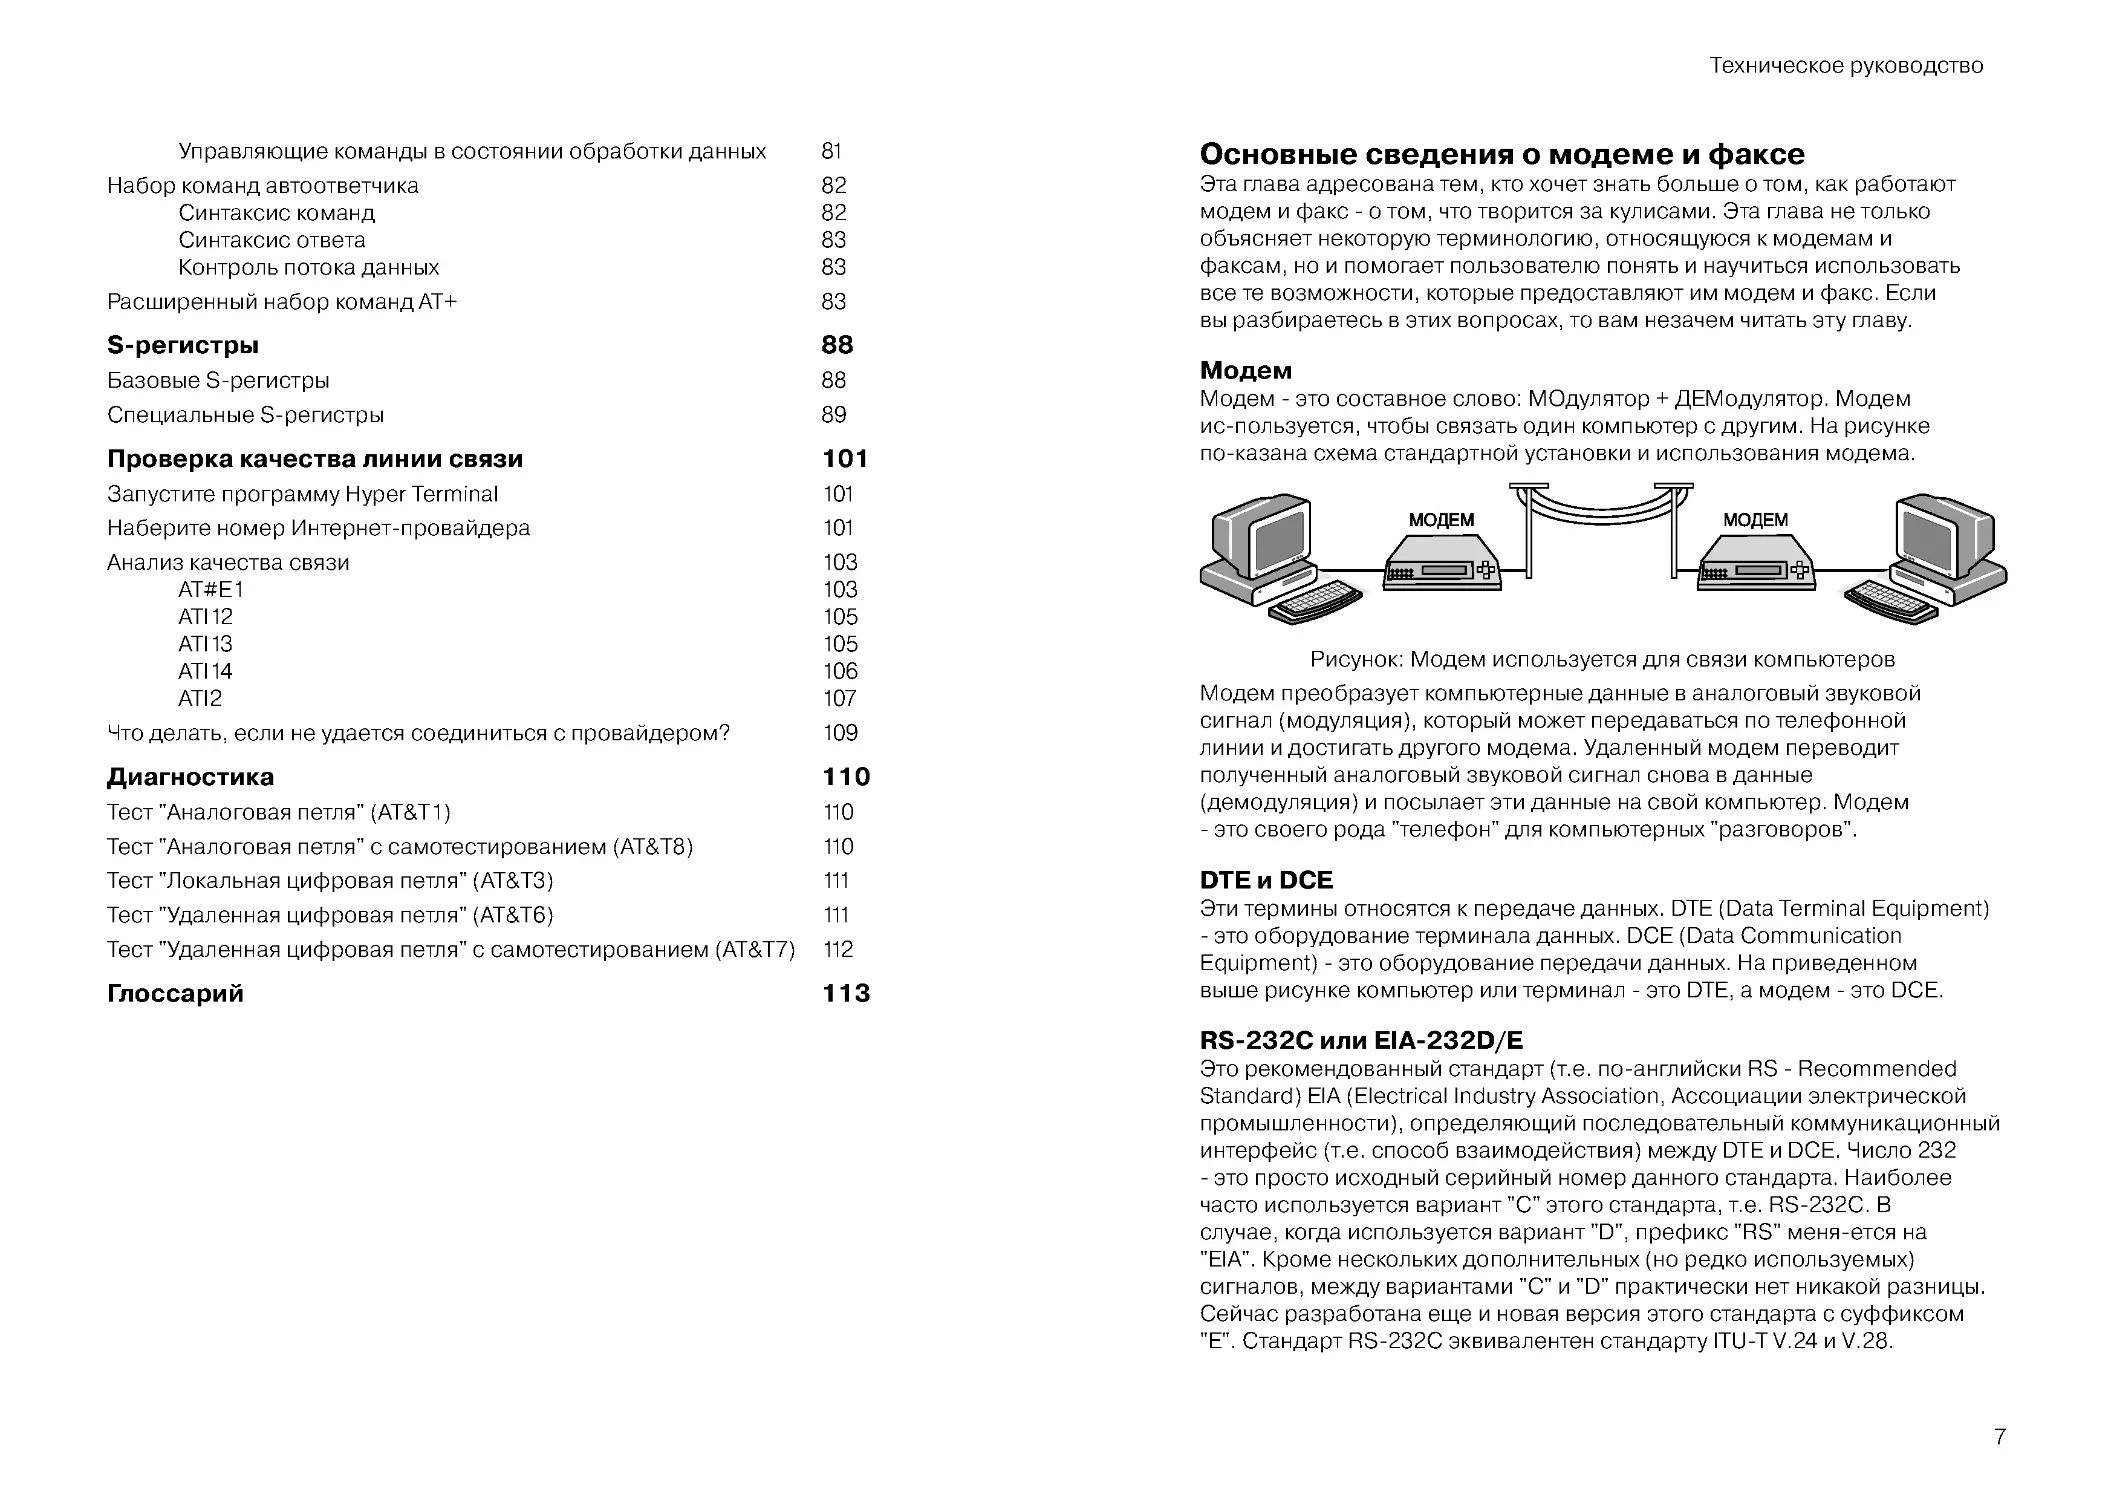 Основные сведения о модеме и факсе
Модем
DTE и DCE
RS-232C или EIA-232D/E